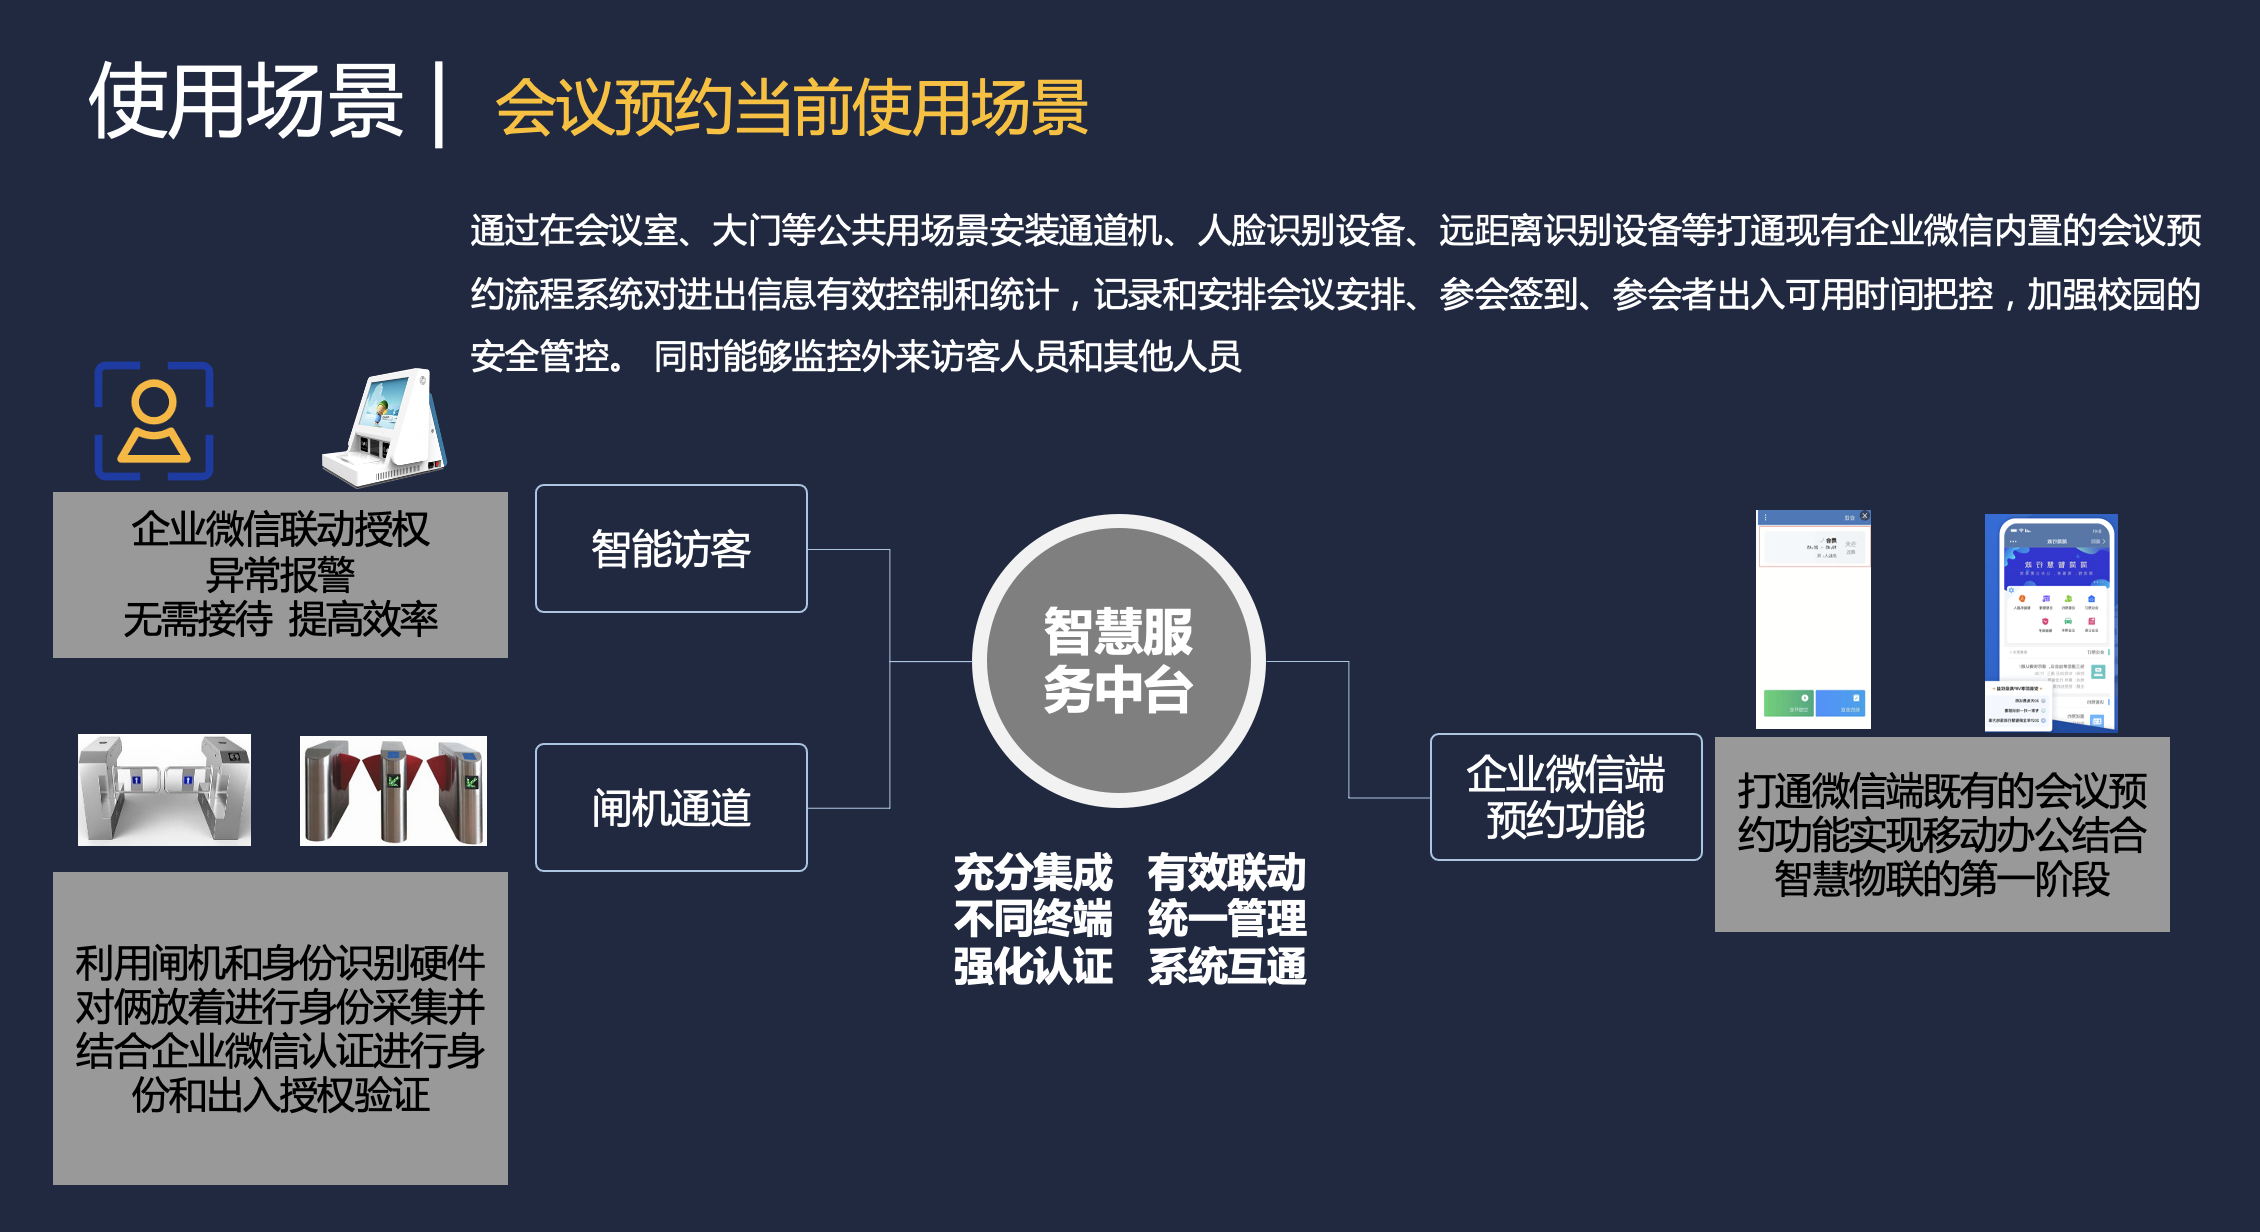 北京海淀区某实验学校会议预约系统定制开发